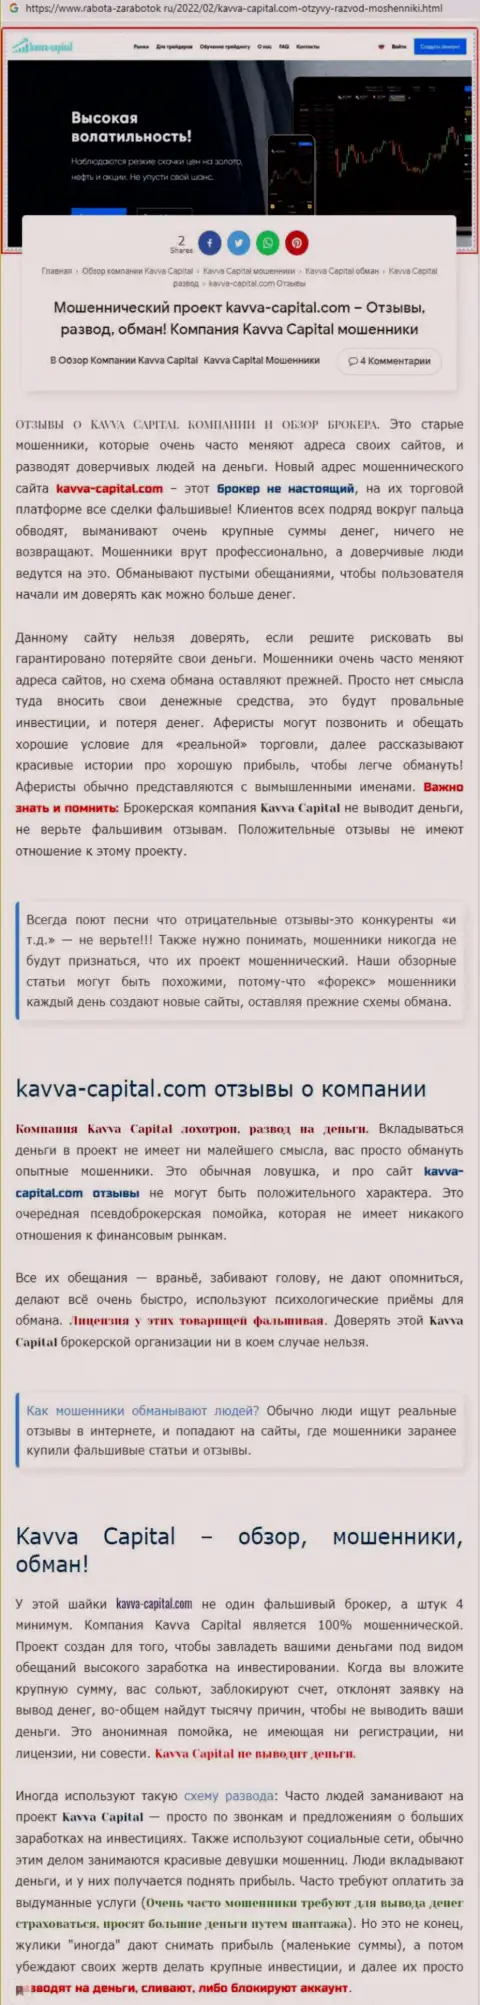 Быстрее забирайте вложения из Kavva-Capital Com - НАКАЛЫВАЮТ !!! (обзор интернет-обманщиков)